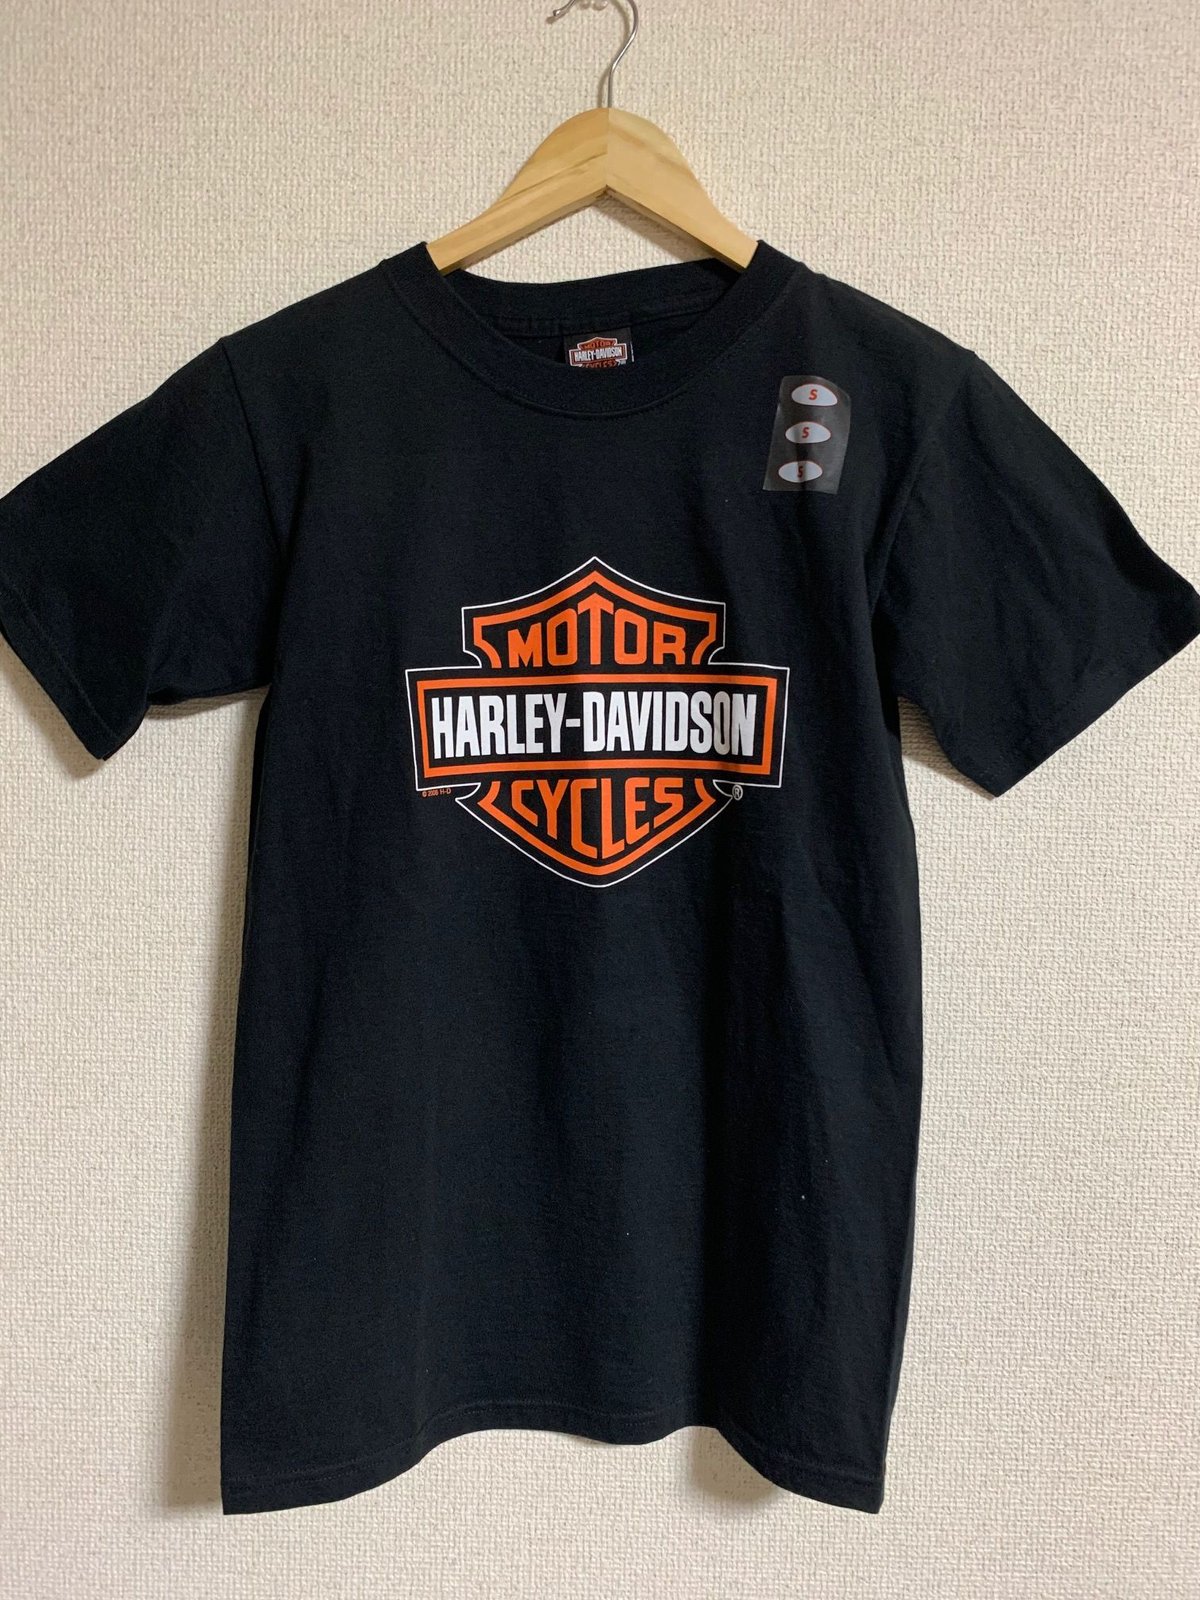 新品 DEADSTOCK USA90'sGILDAN HAWAII Tシャツ